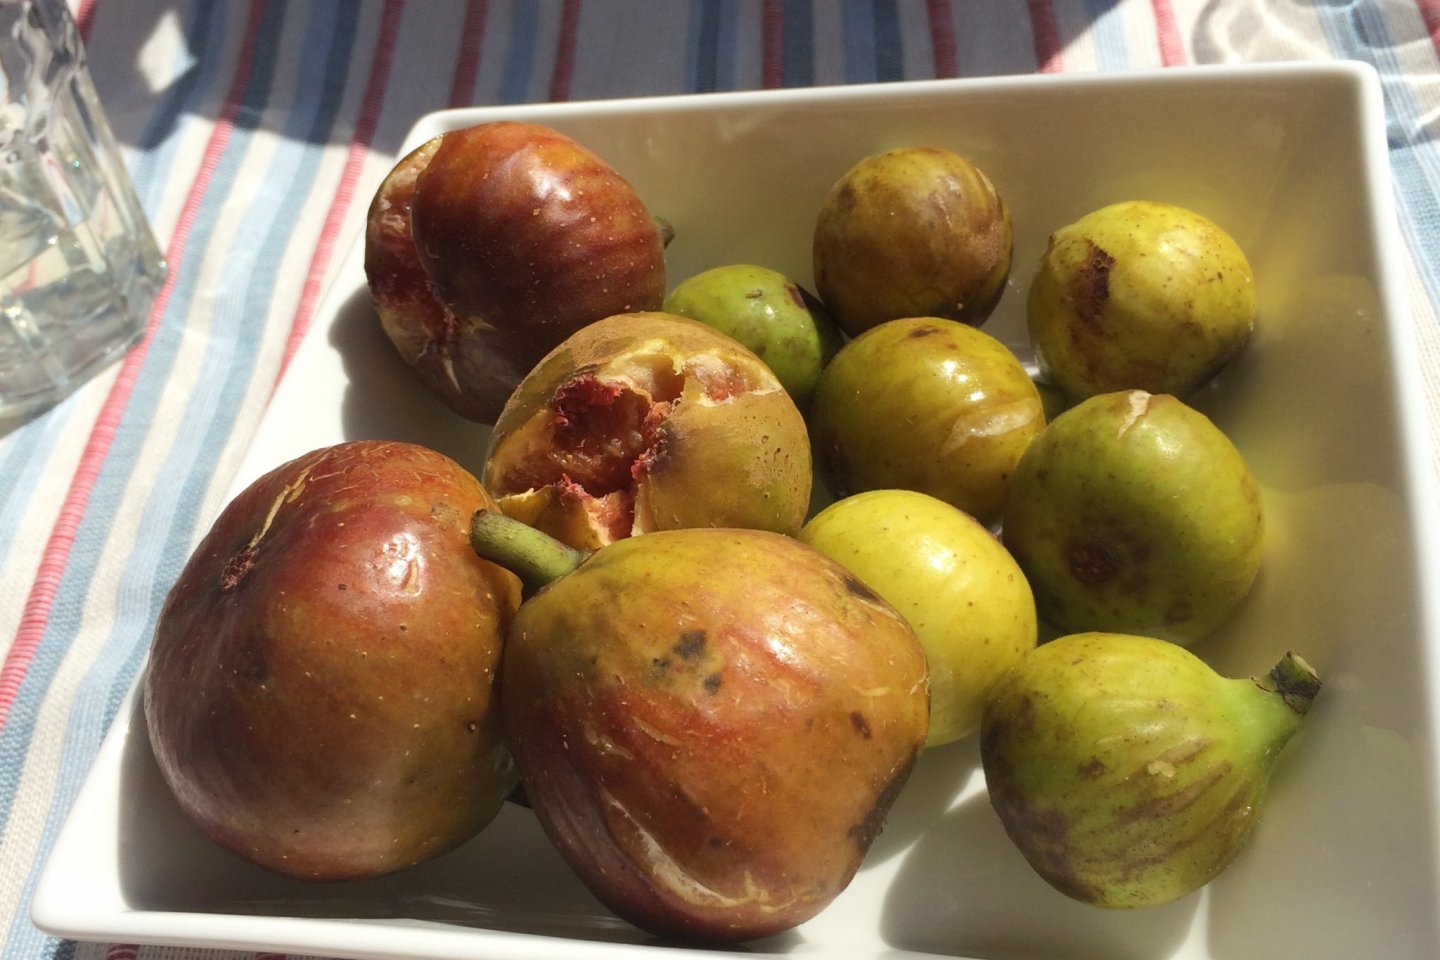 Fresh figs!